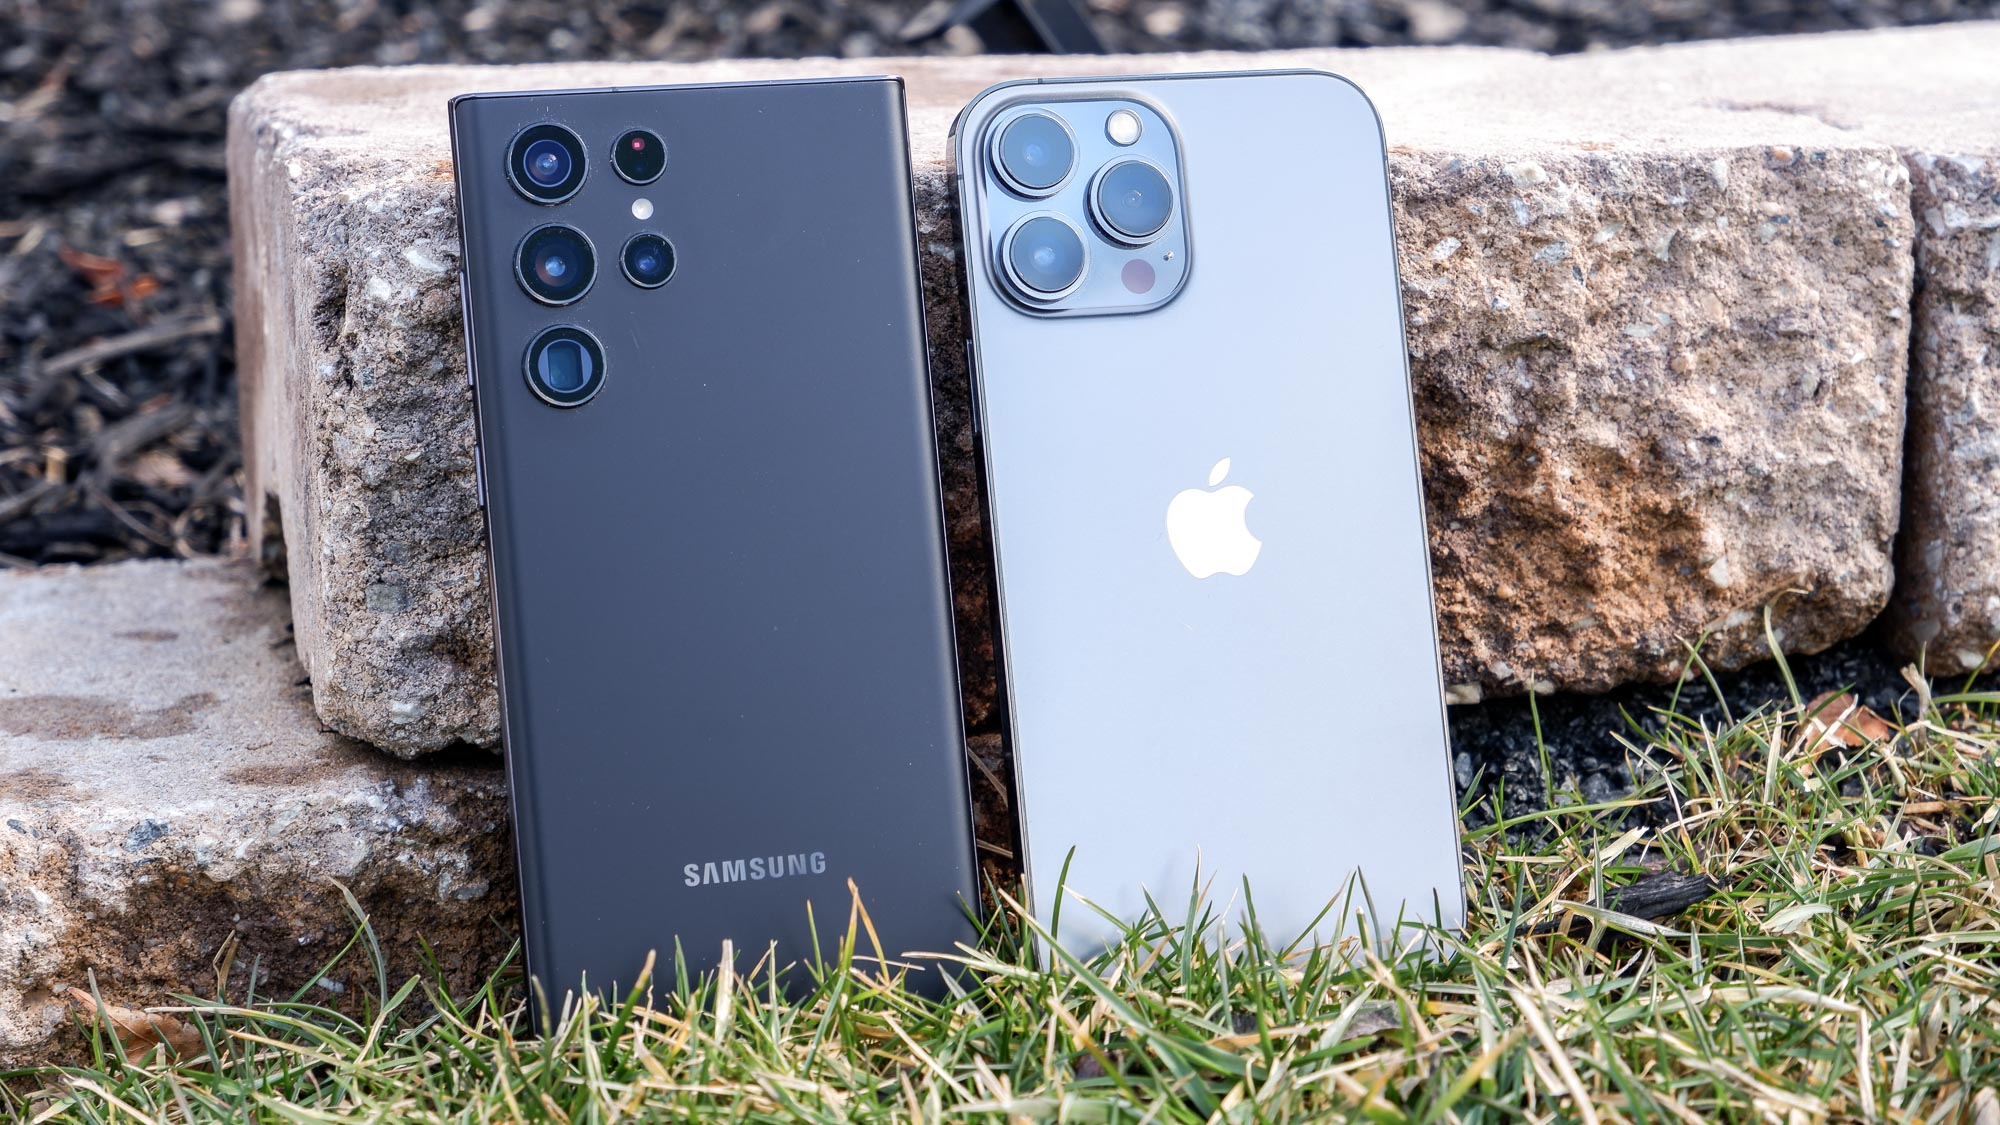 Samsung Galaxy S22 Ultra o iPhone 13 Pro Max: ¿Cuál es el adecuado para ti?